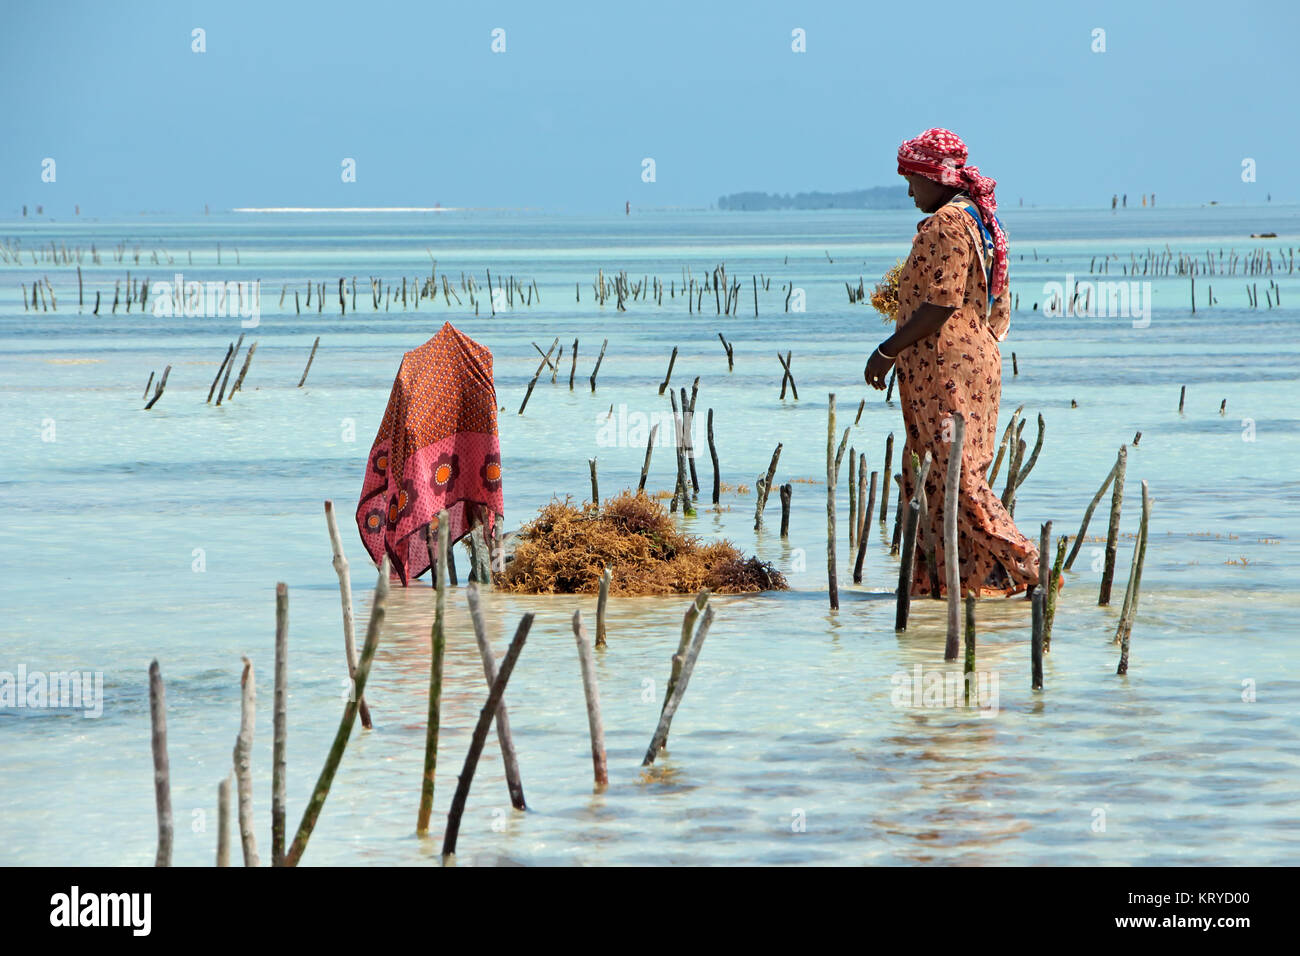 Sansibar, Tansania - Oktober 25, 2014: Nicht identifizierte Frau Ernte kultivierten Algen im flachen, klaren Küstengewässer der Insel Sansibar Stockfoto